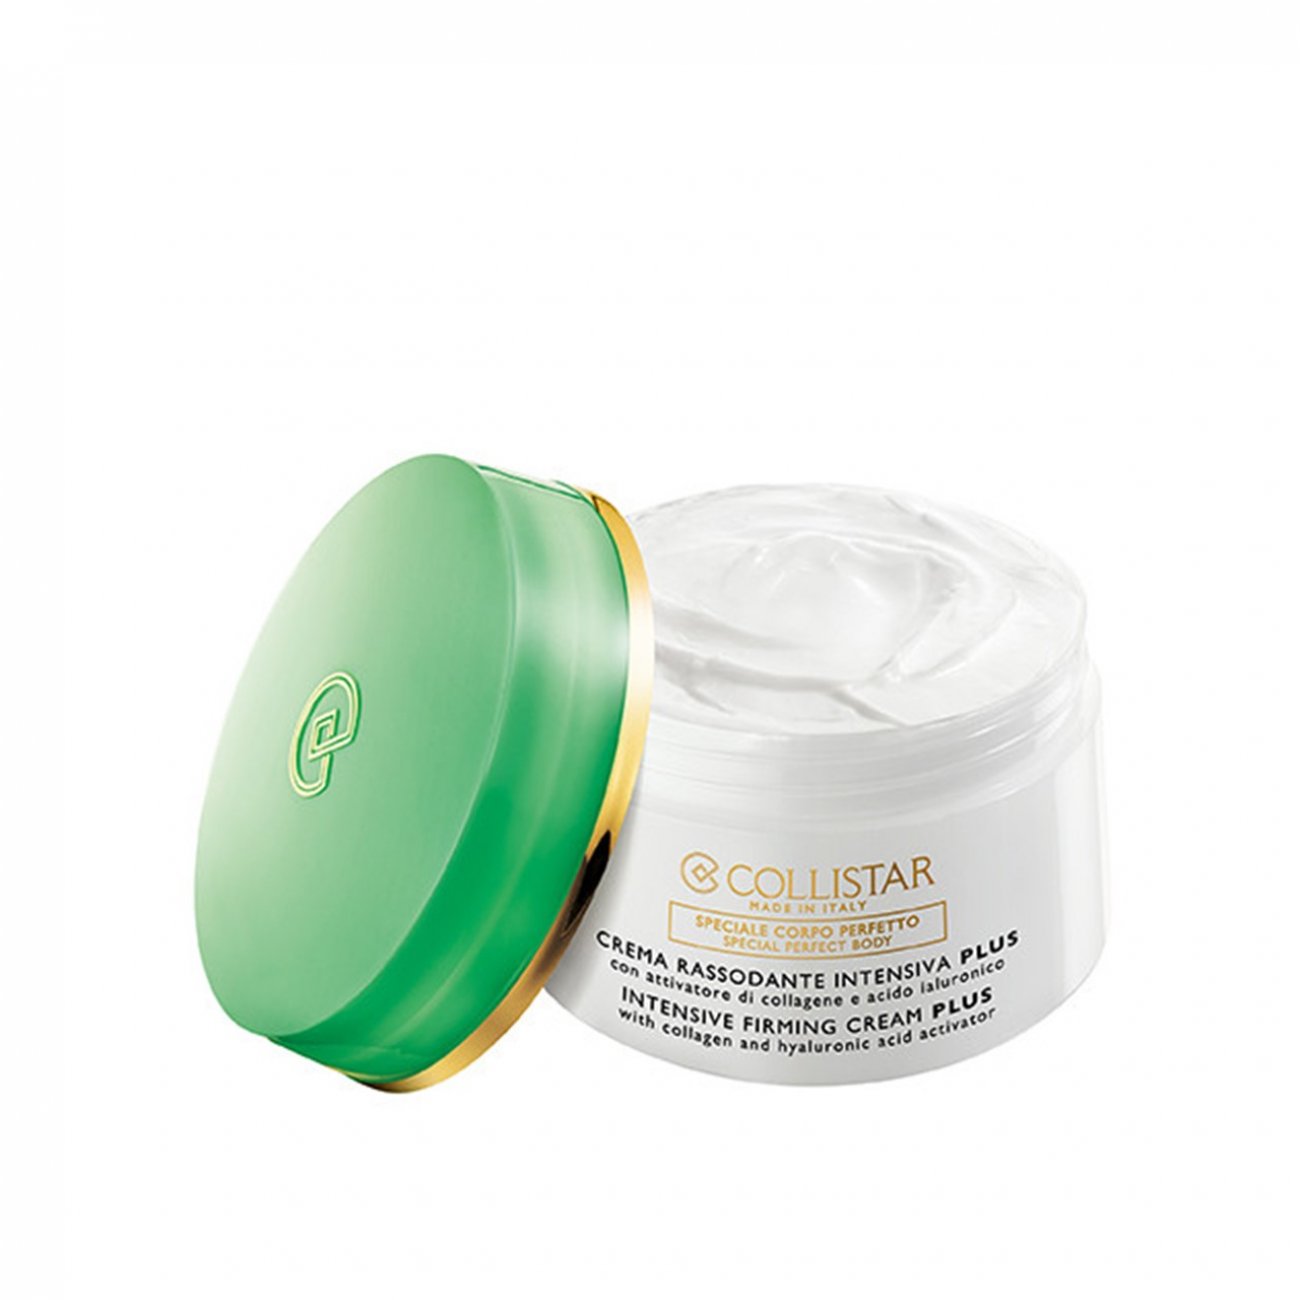 Voorzitter Trein Omzet Buy Collistar Body Intensive Firming Cream Plus 400ml (13.53fl oz) · USA